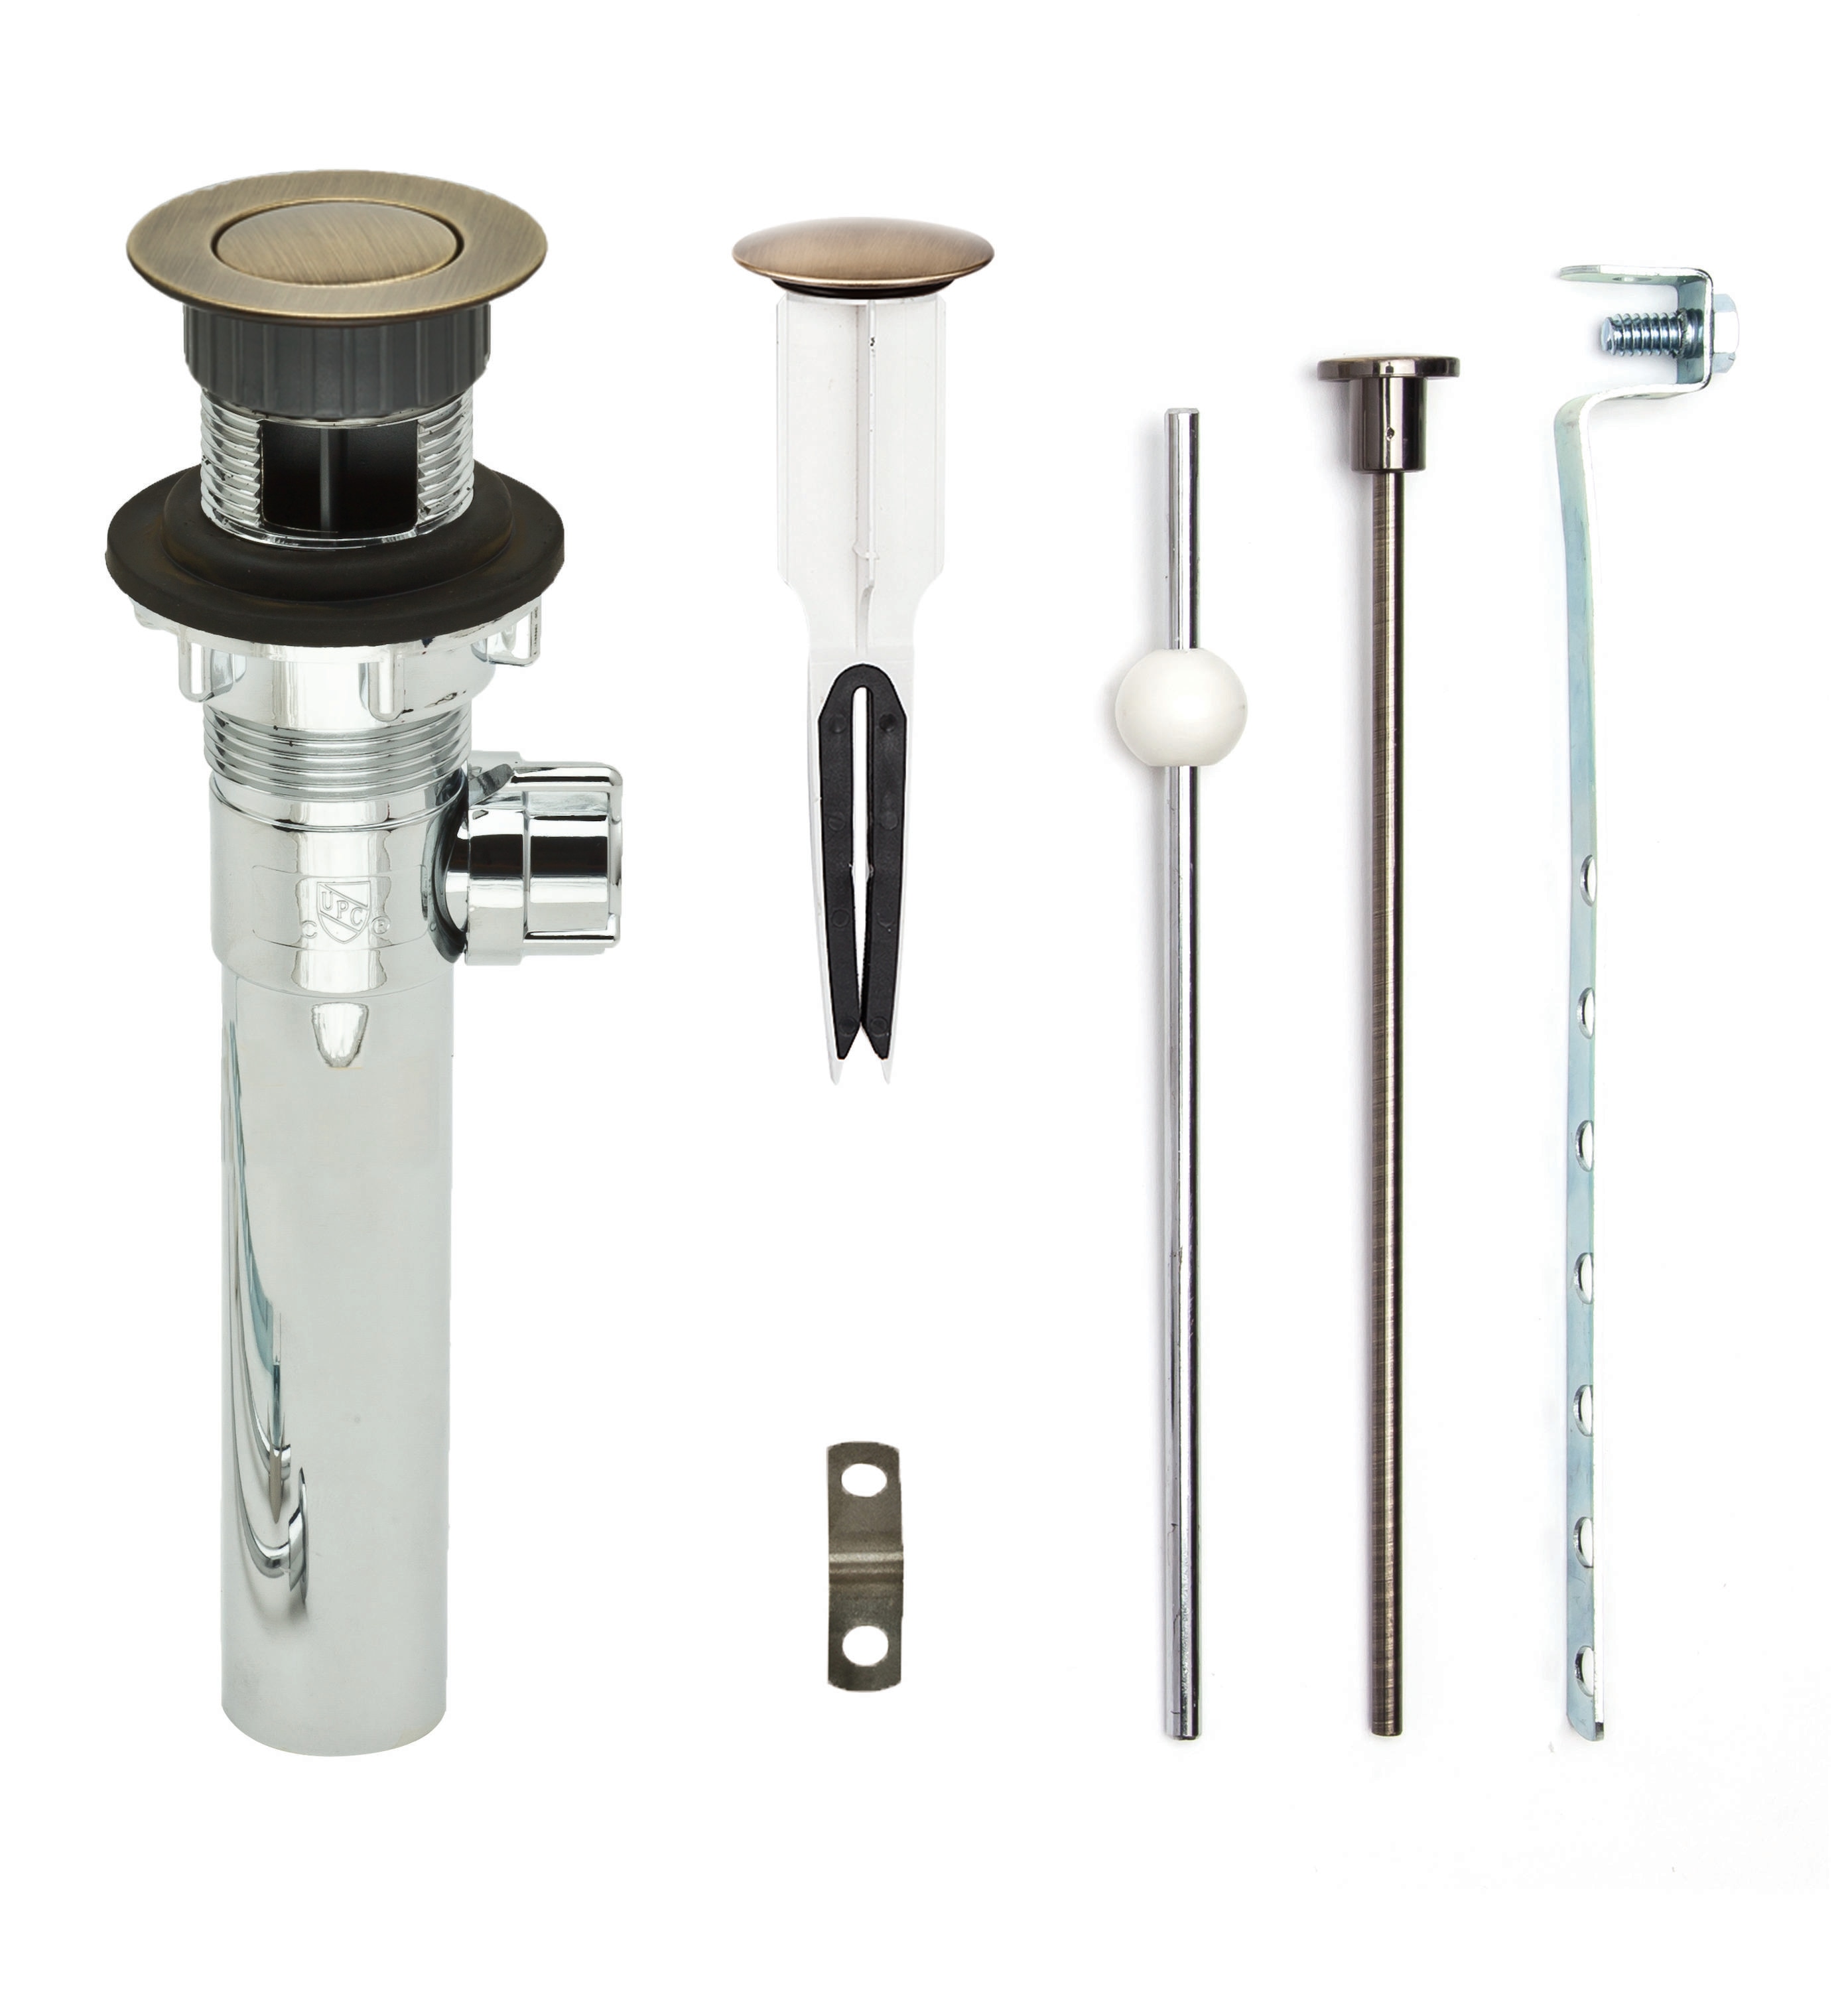 Waterworks 26-59004-55481 Faucet Pop Up Drain Chrome 